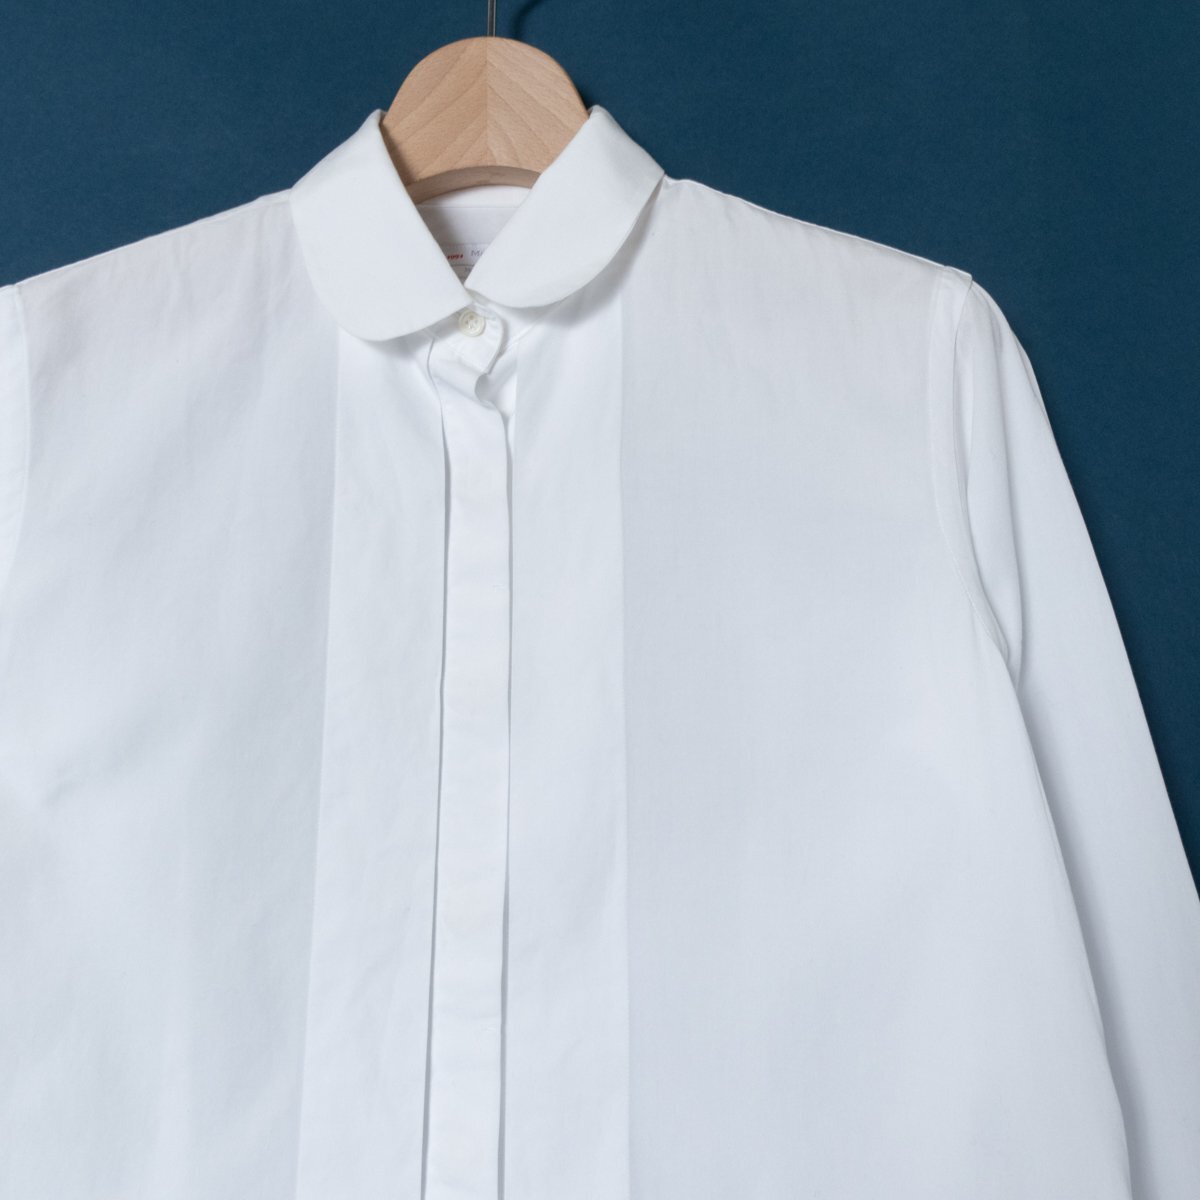 メール便◯ Maker's Shirt KAMAKURA メーカーズシャツ鎌倉 日本製 シャツ 長袖 トップス 9 綿100% コットン ホワイト 白 綺麗め シンプル_画像3